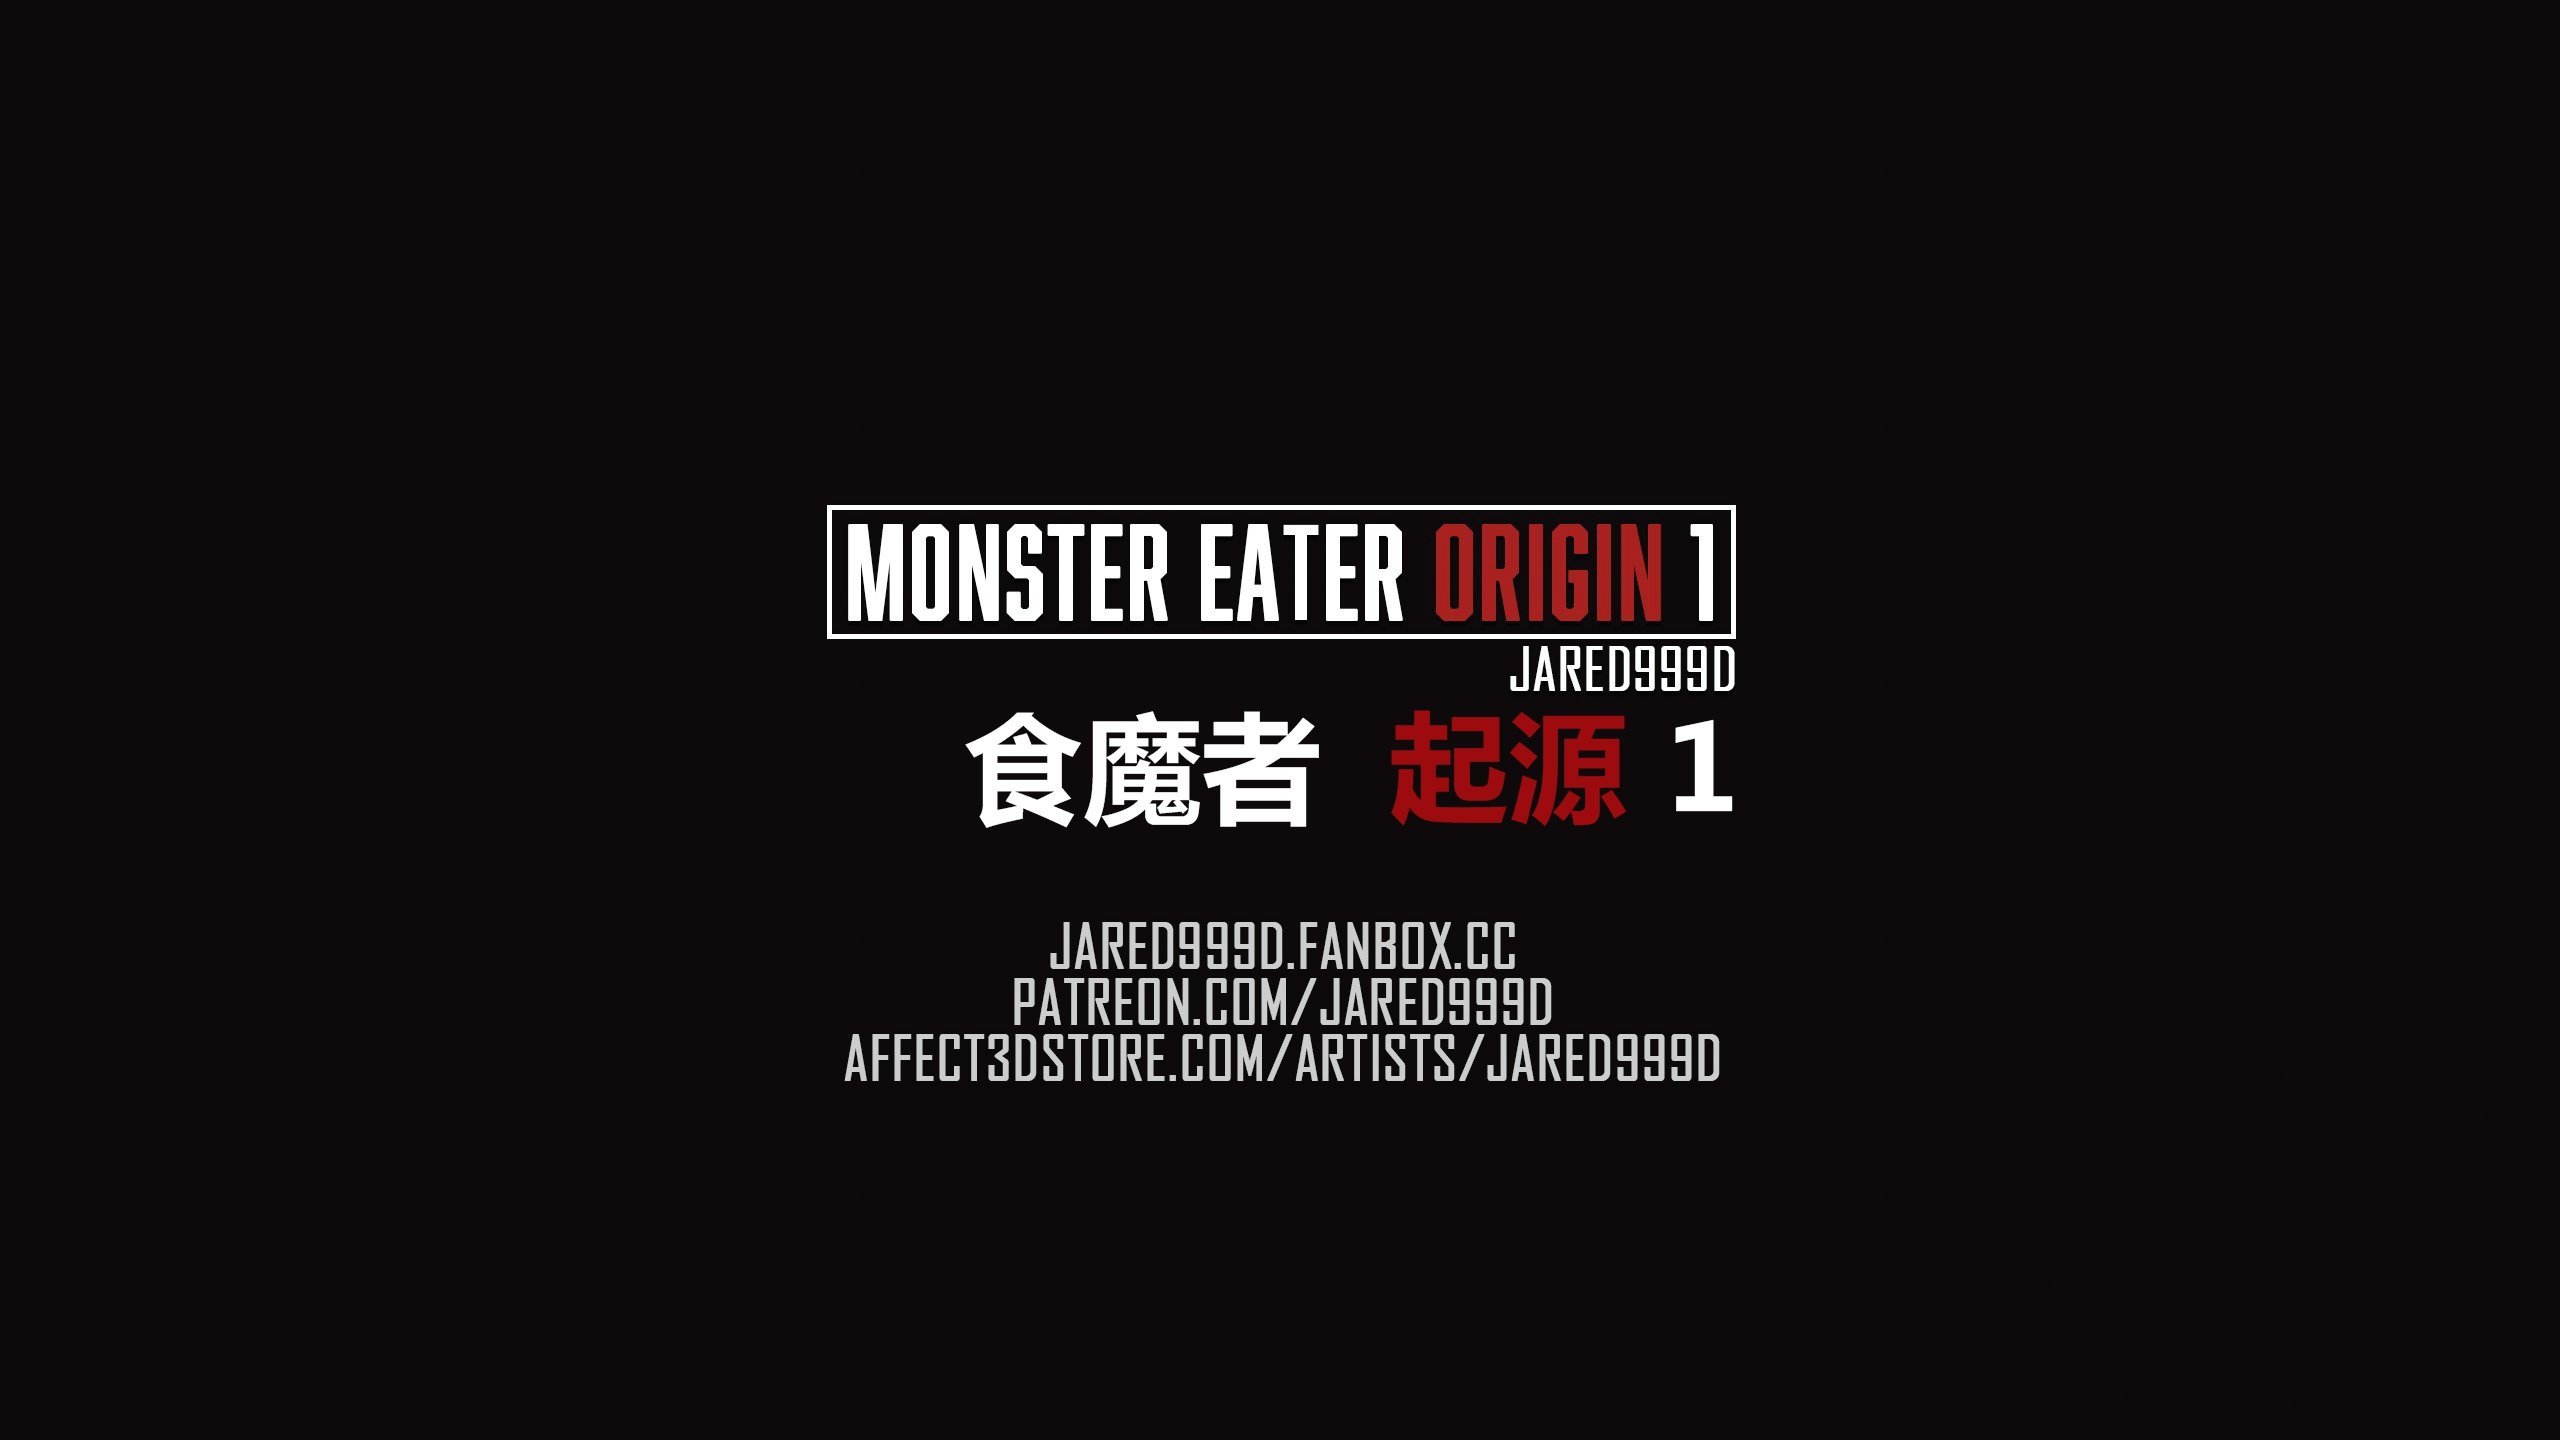 [Jared999D] Monster Eater Origin 1 Karen’s